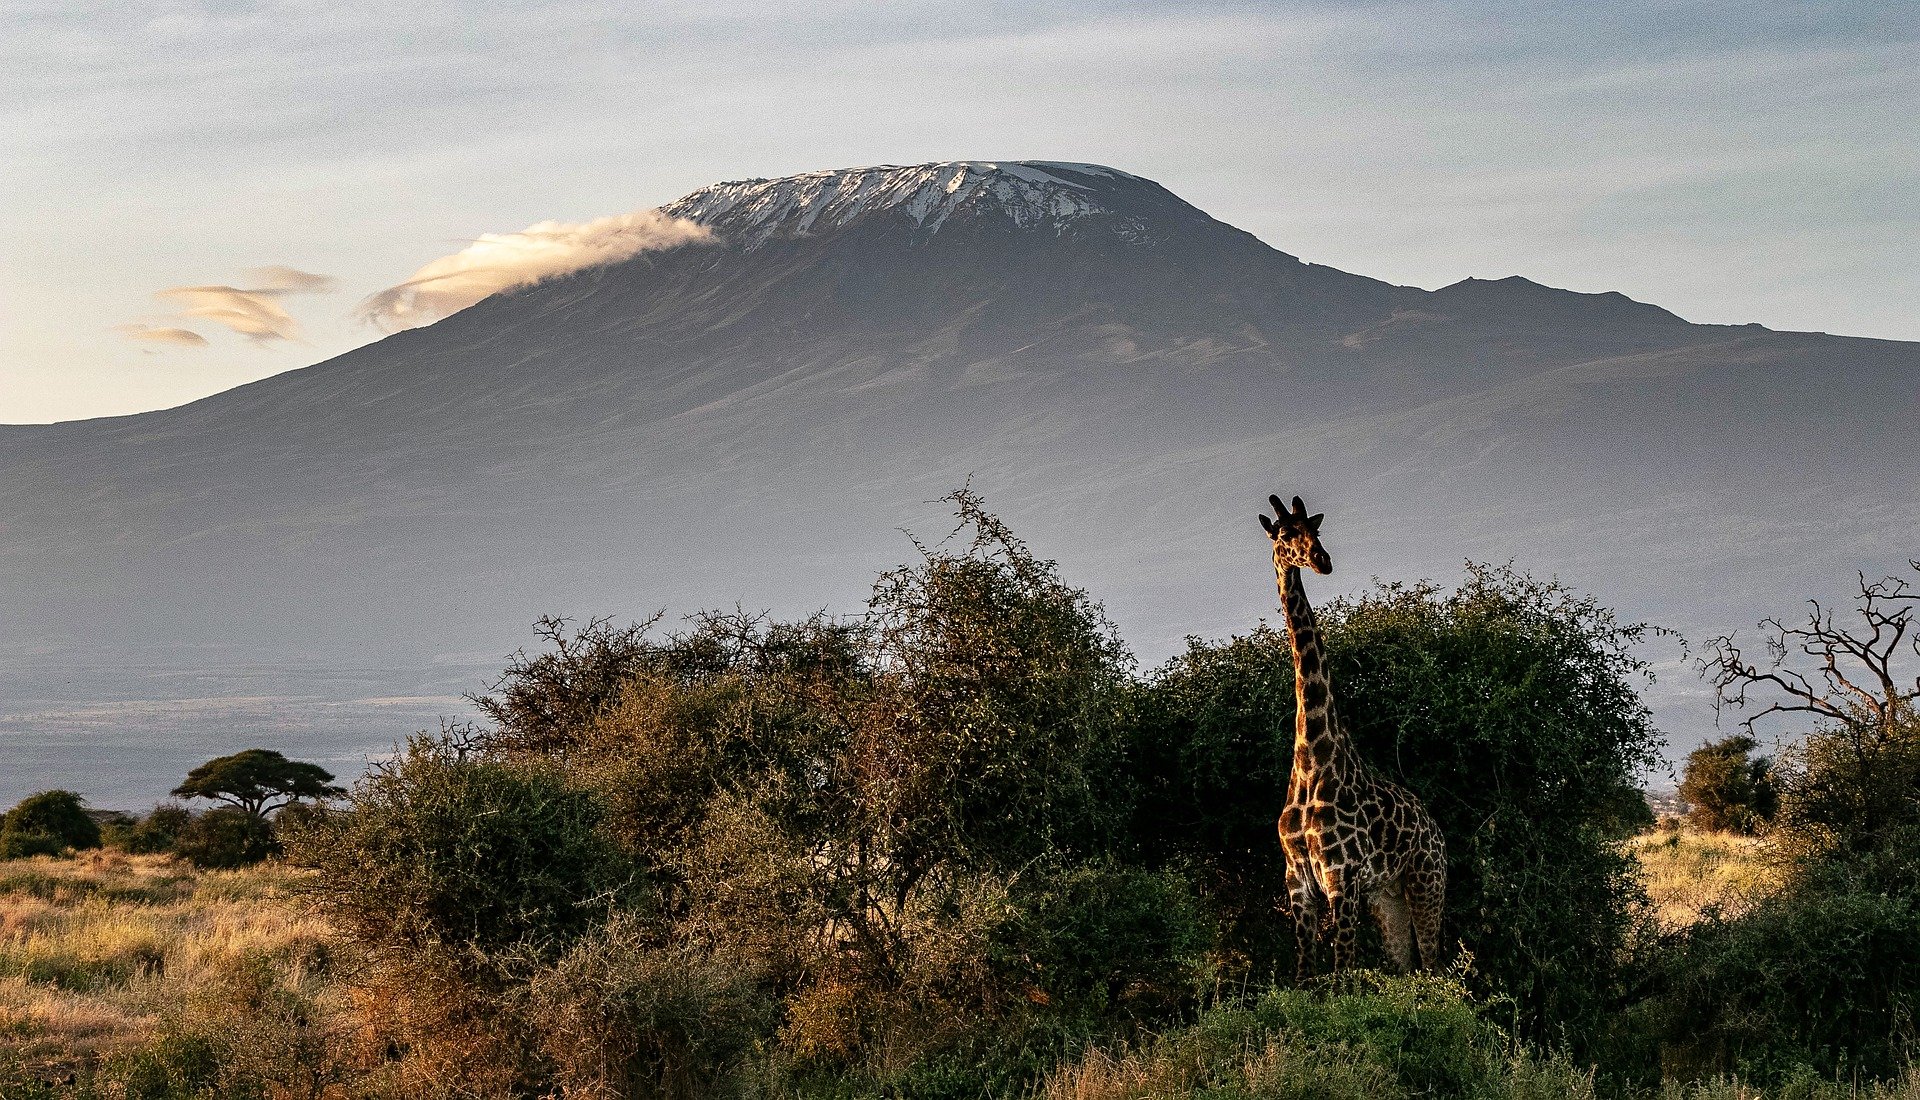 Esporte de aventura: Escalada ao Monte Kilimanjaro